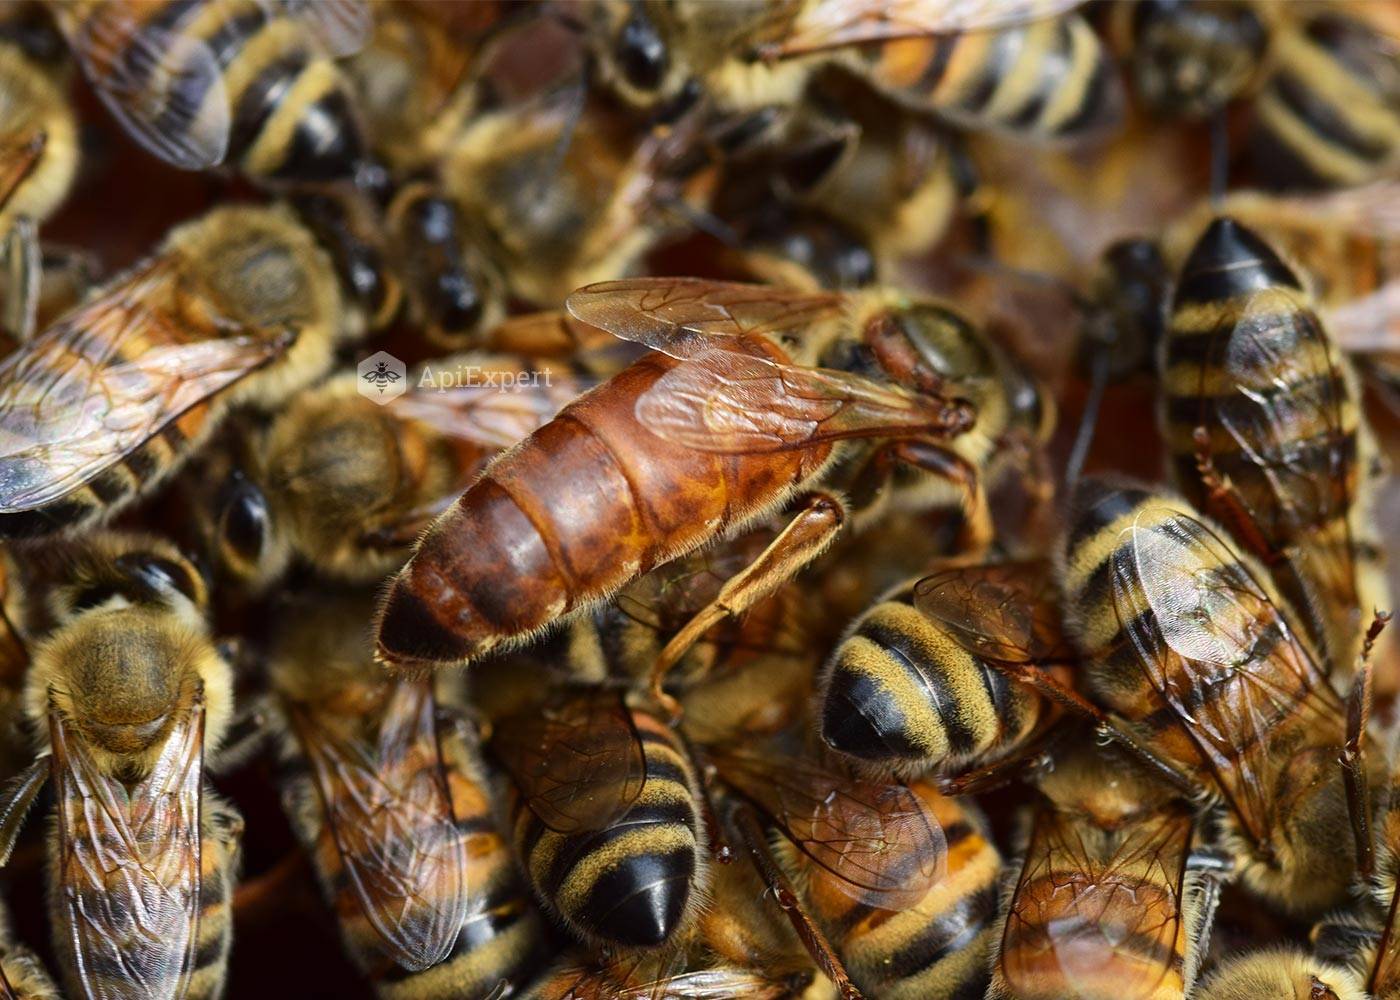 Пчела плотник насекомое. описание, особенности, образ жизни и среда обитания пчелы | живность.ру